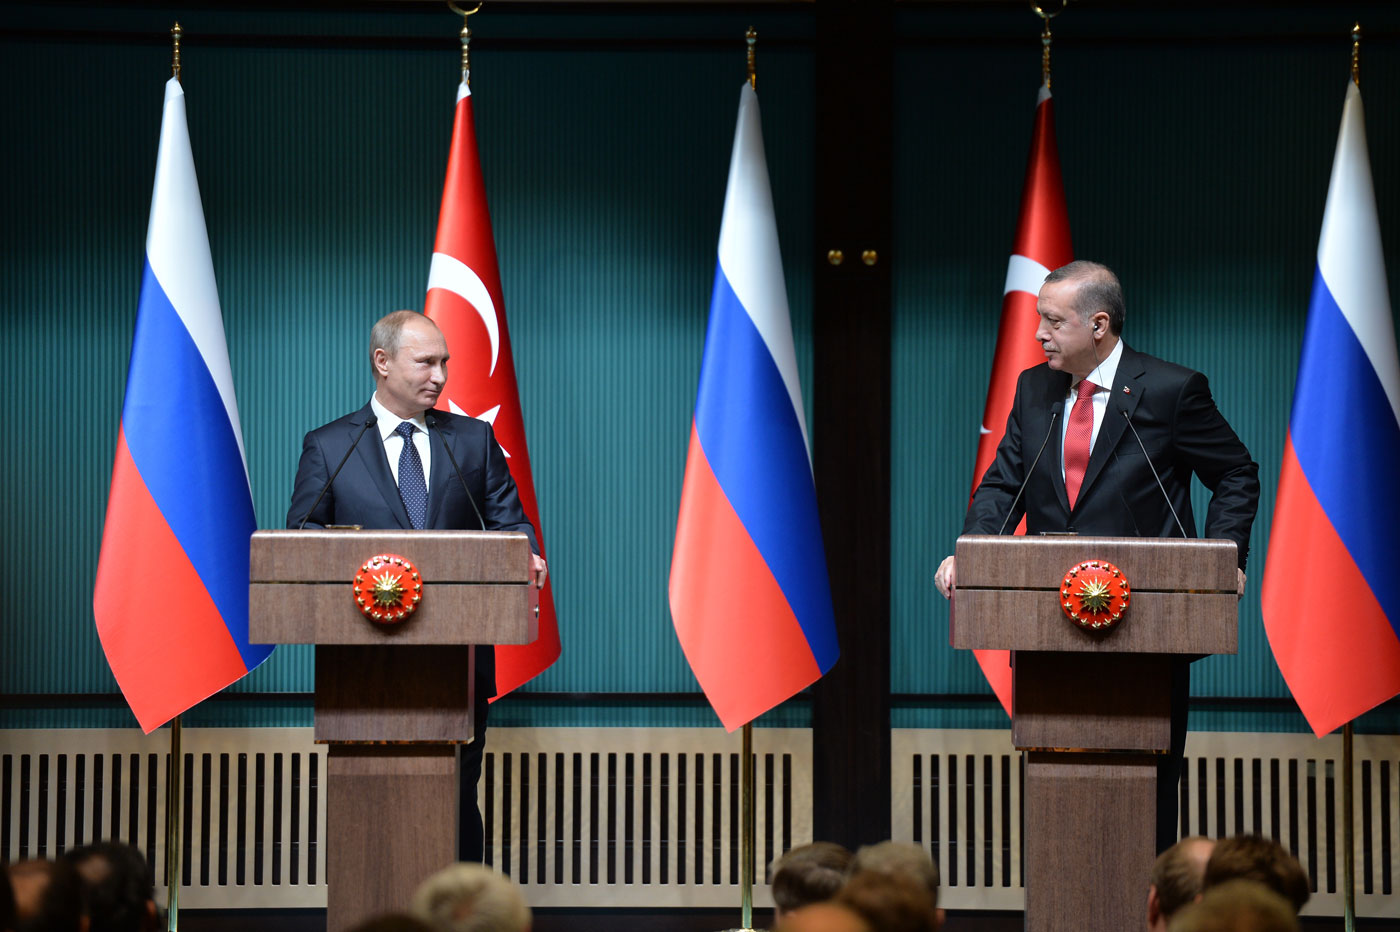 Тюркологи: Анкара и Москва сближаются на фоне конфронтации с Западом